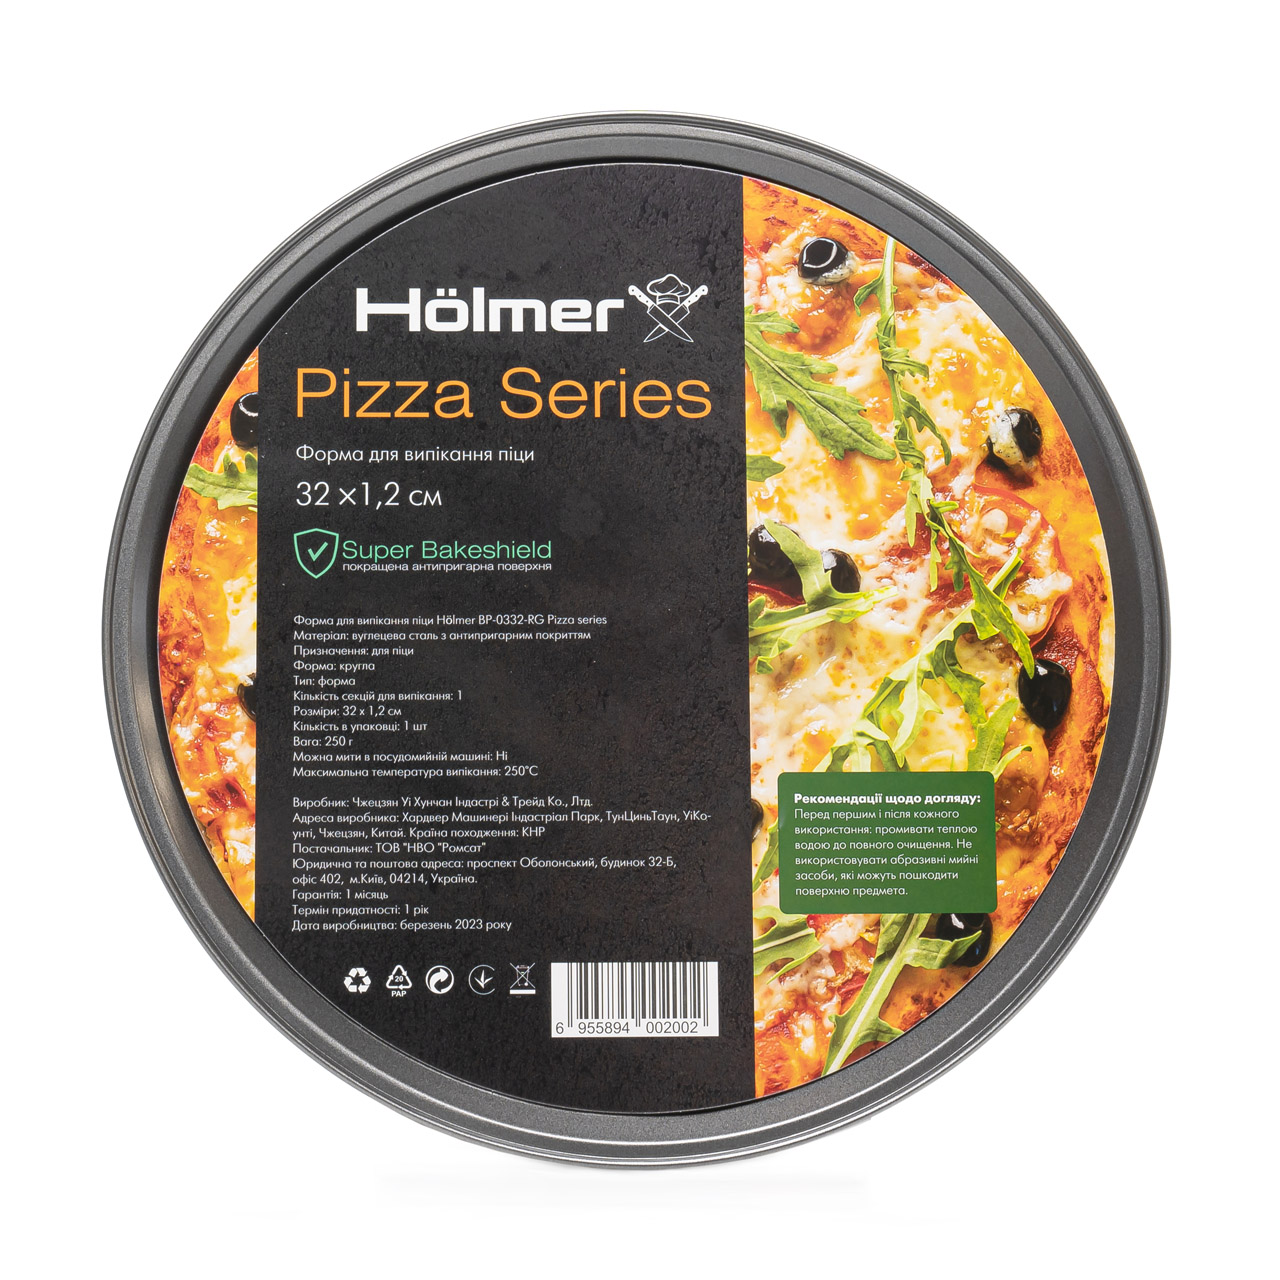 Форма для випікання піци Holmer BP-0332-RG Pizza series 32 см чорна (BP-0332-RG Pizza series) - фото 4